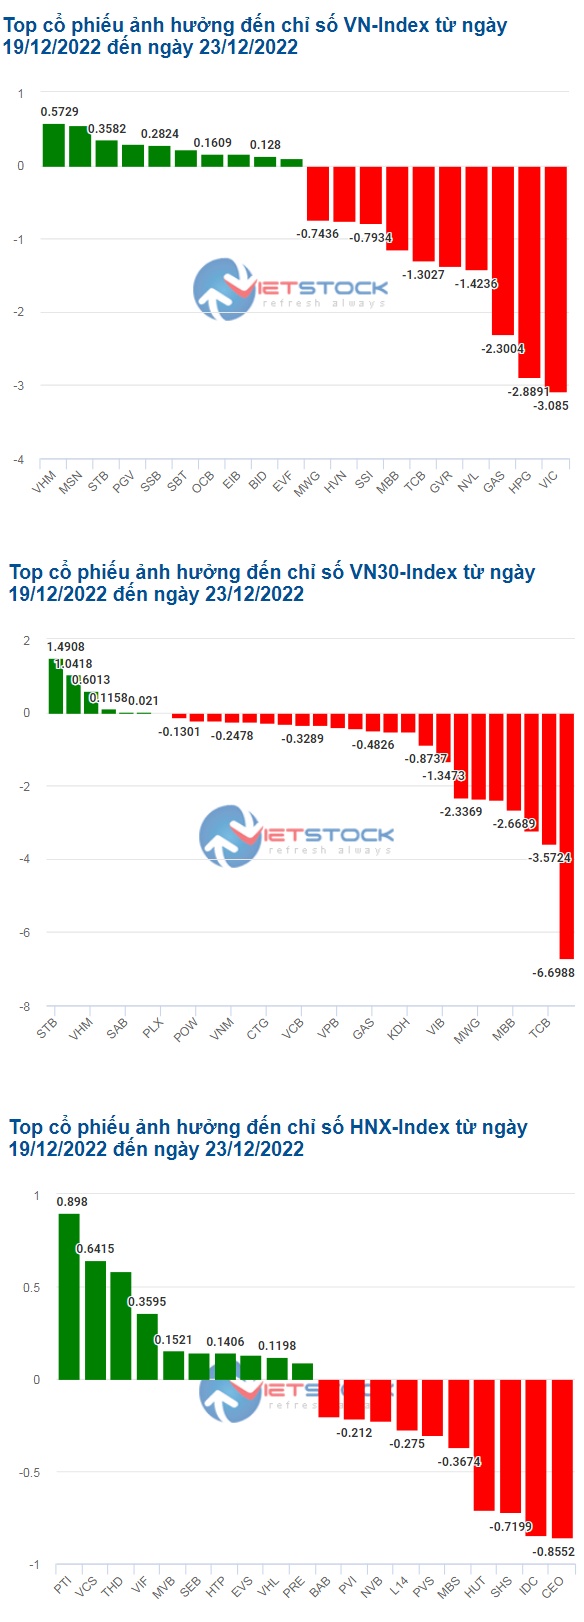 VIC cùng HPG "đẩy lùi" VN-Index trong tuần qua